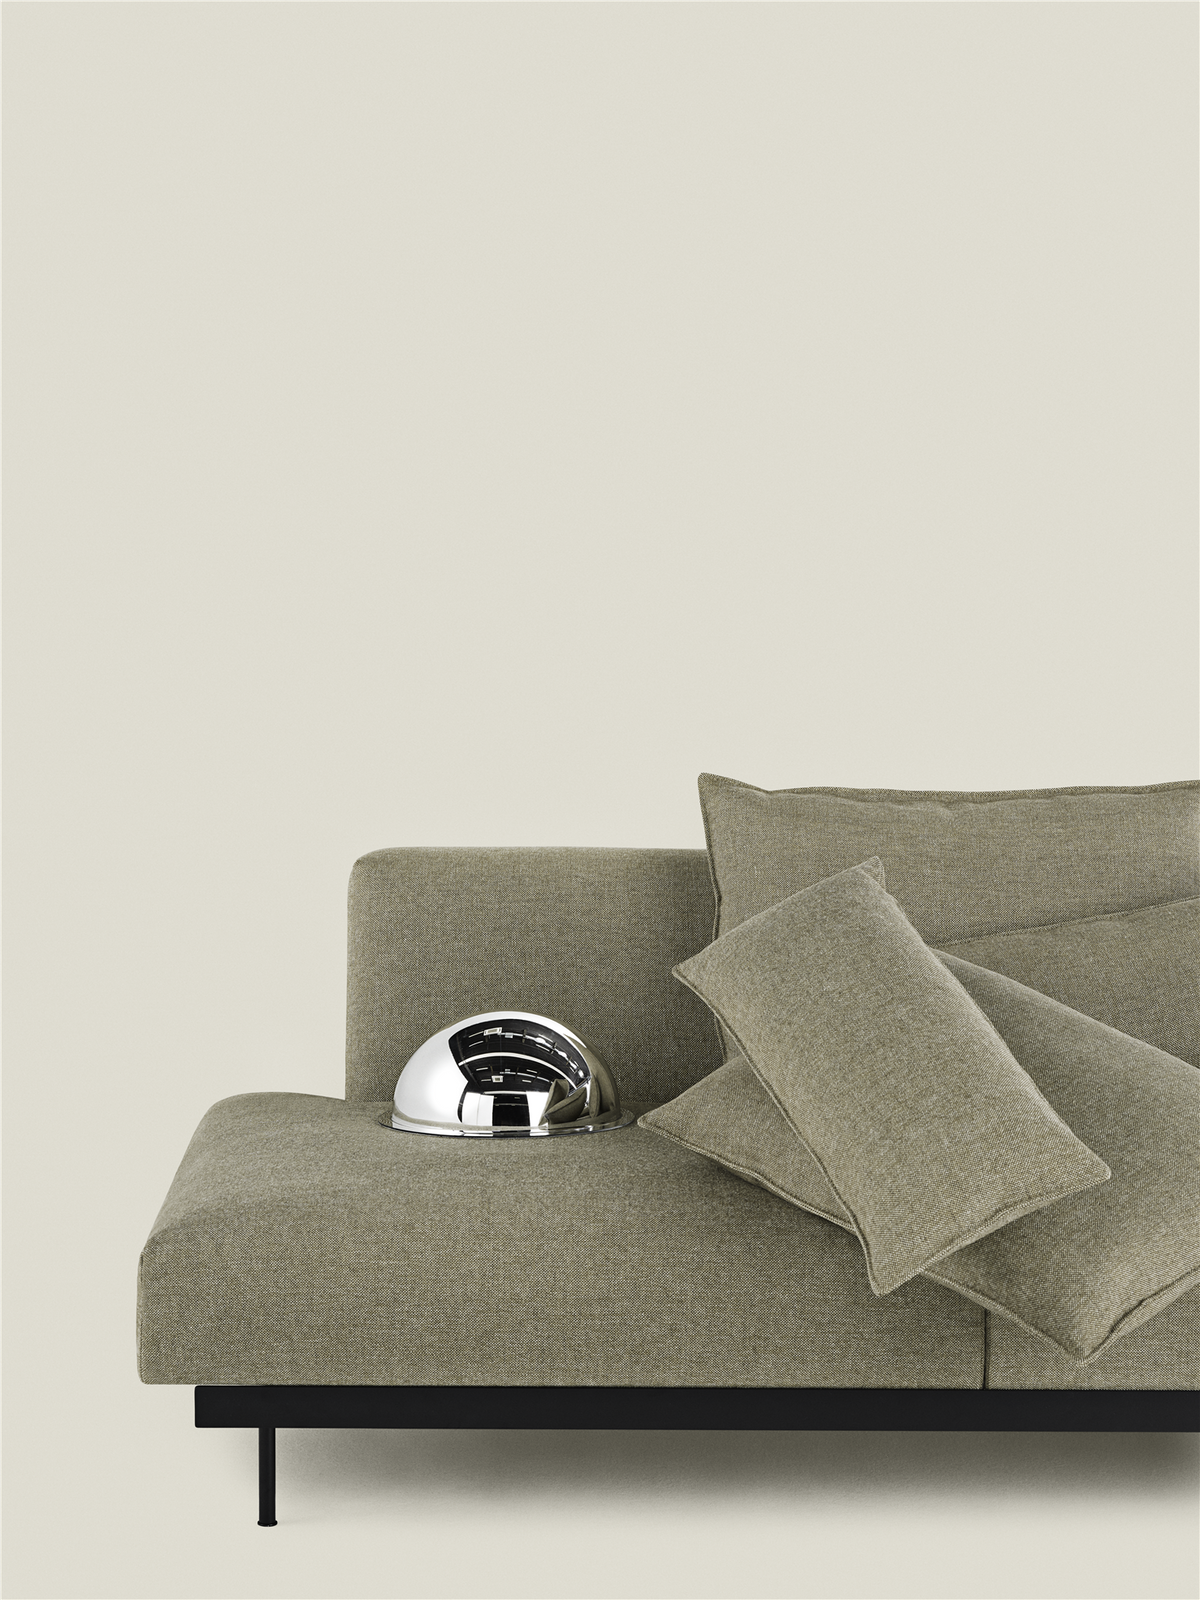 In Situ Modulares Sofa / 3-Sitzer-Konfiguration 2 in Graubraun / Schwarz präsentiert im Onlineshop von KAQTU Design AG. 3er Sofa ist von Muuto